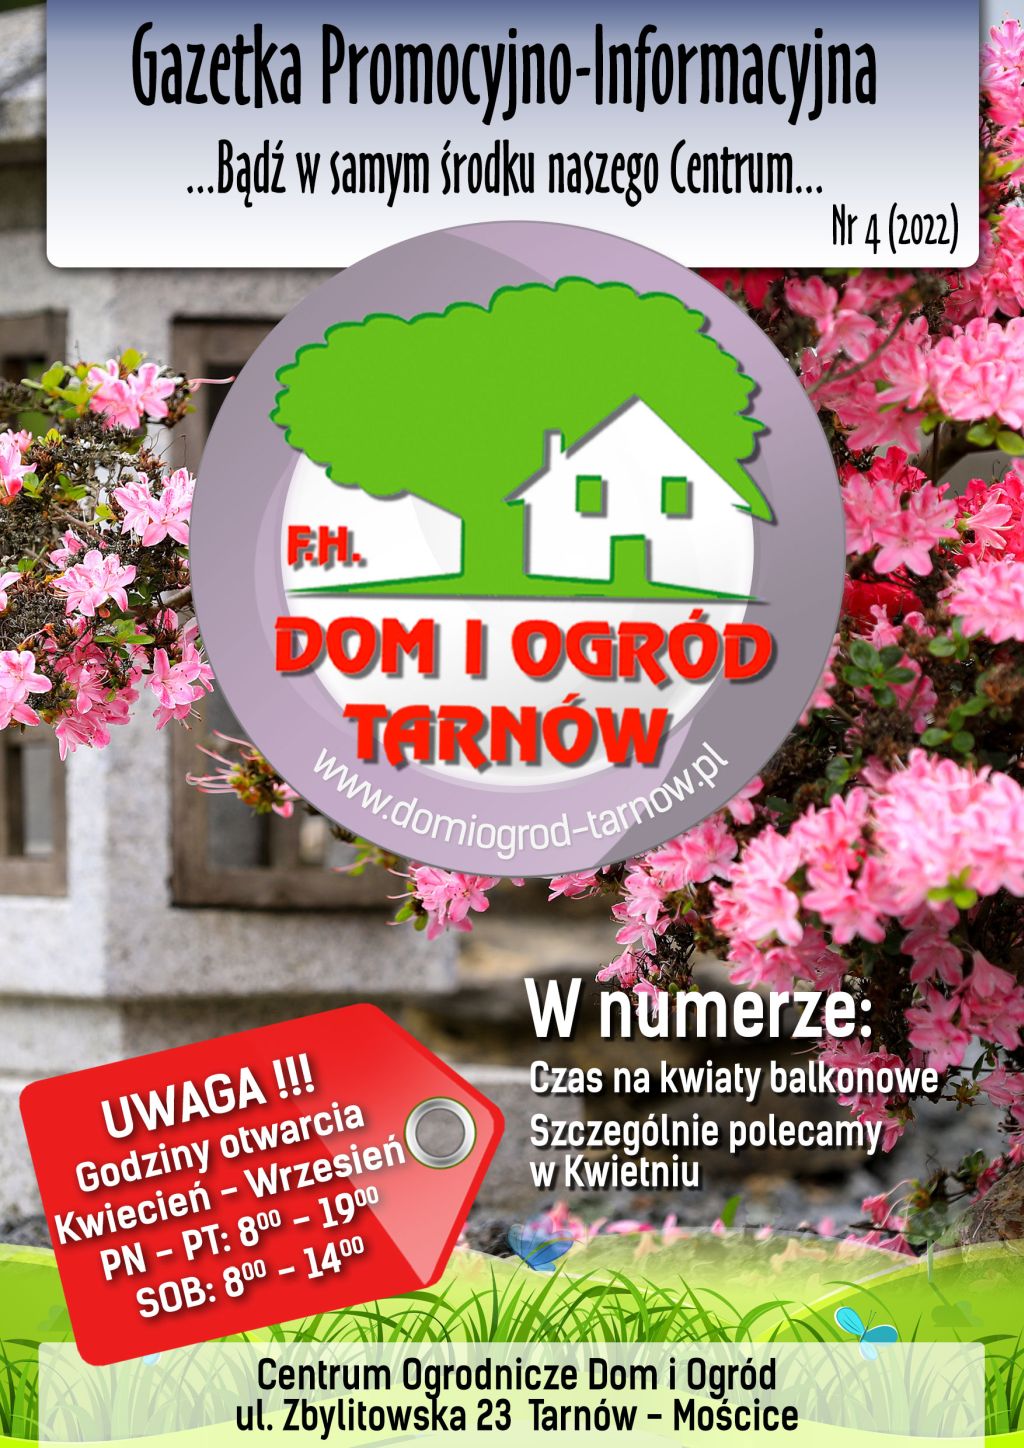 Gazetka Promocyjno-Informacyjna - 04/2022